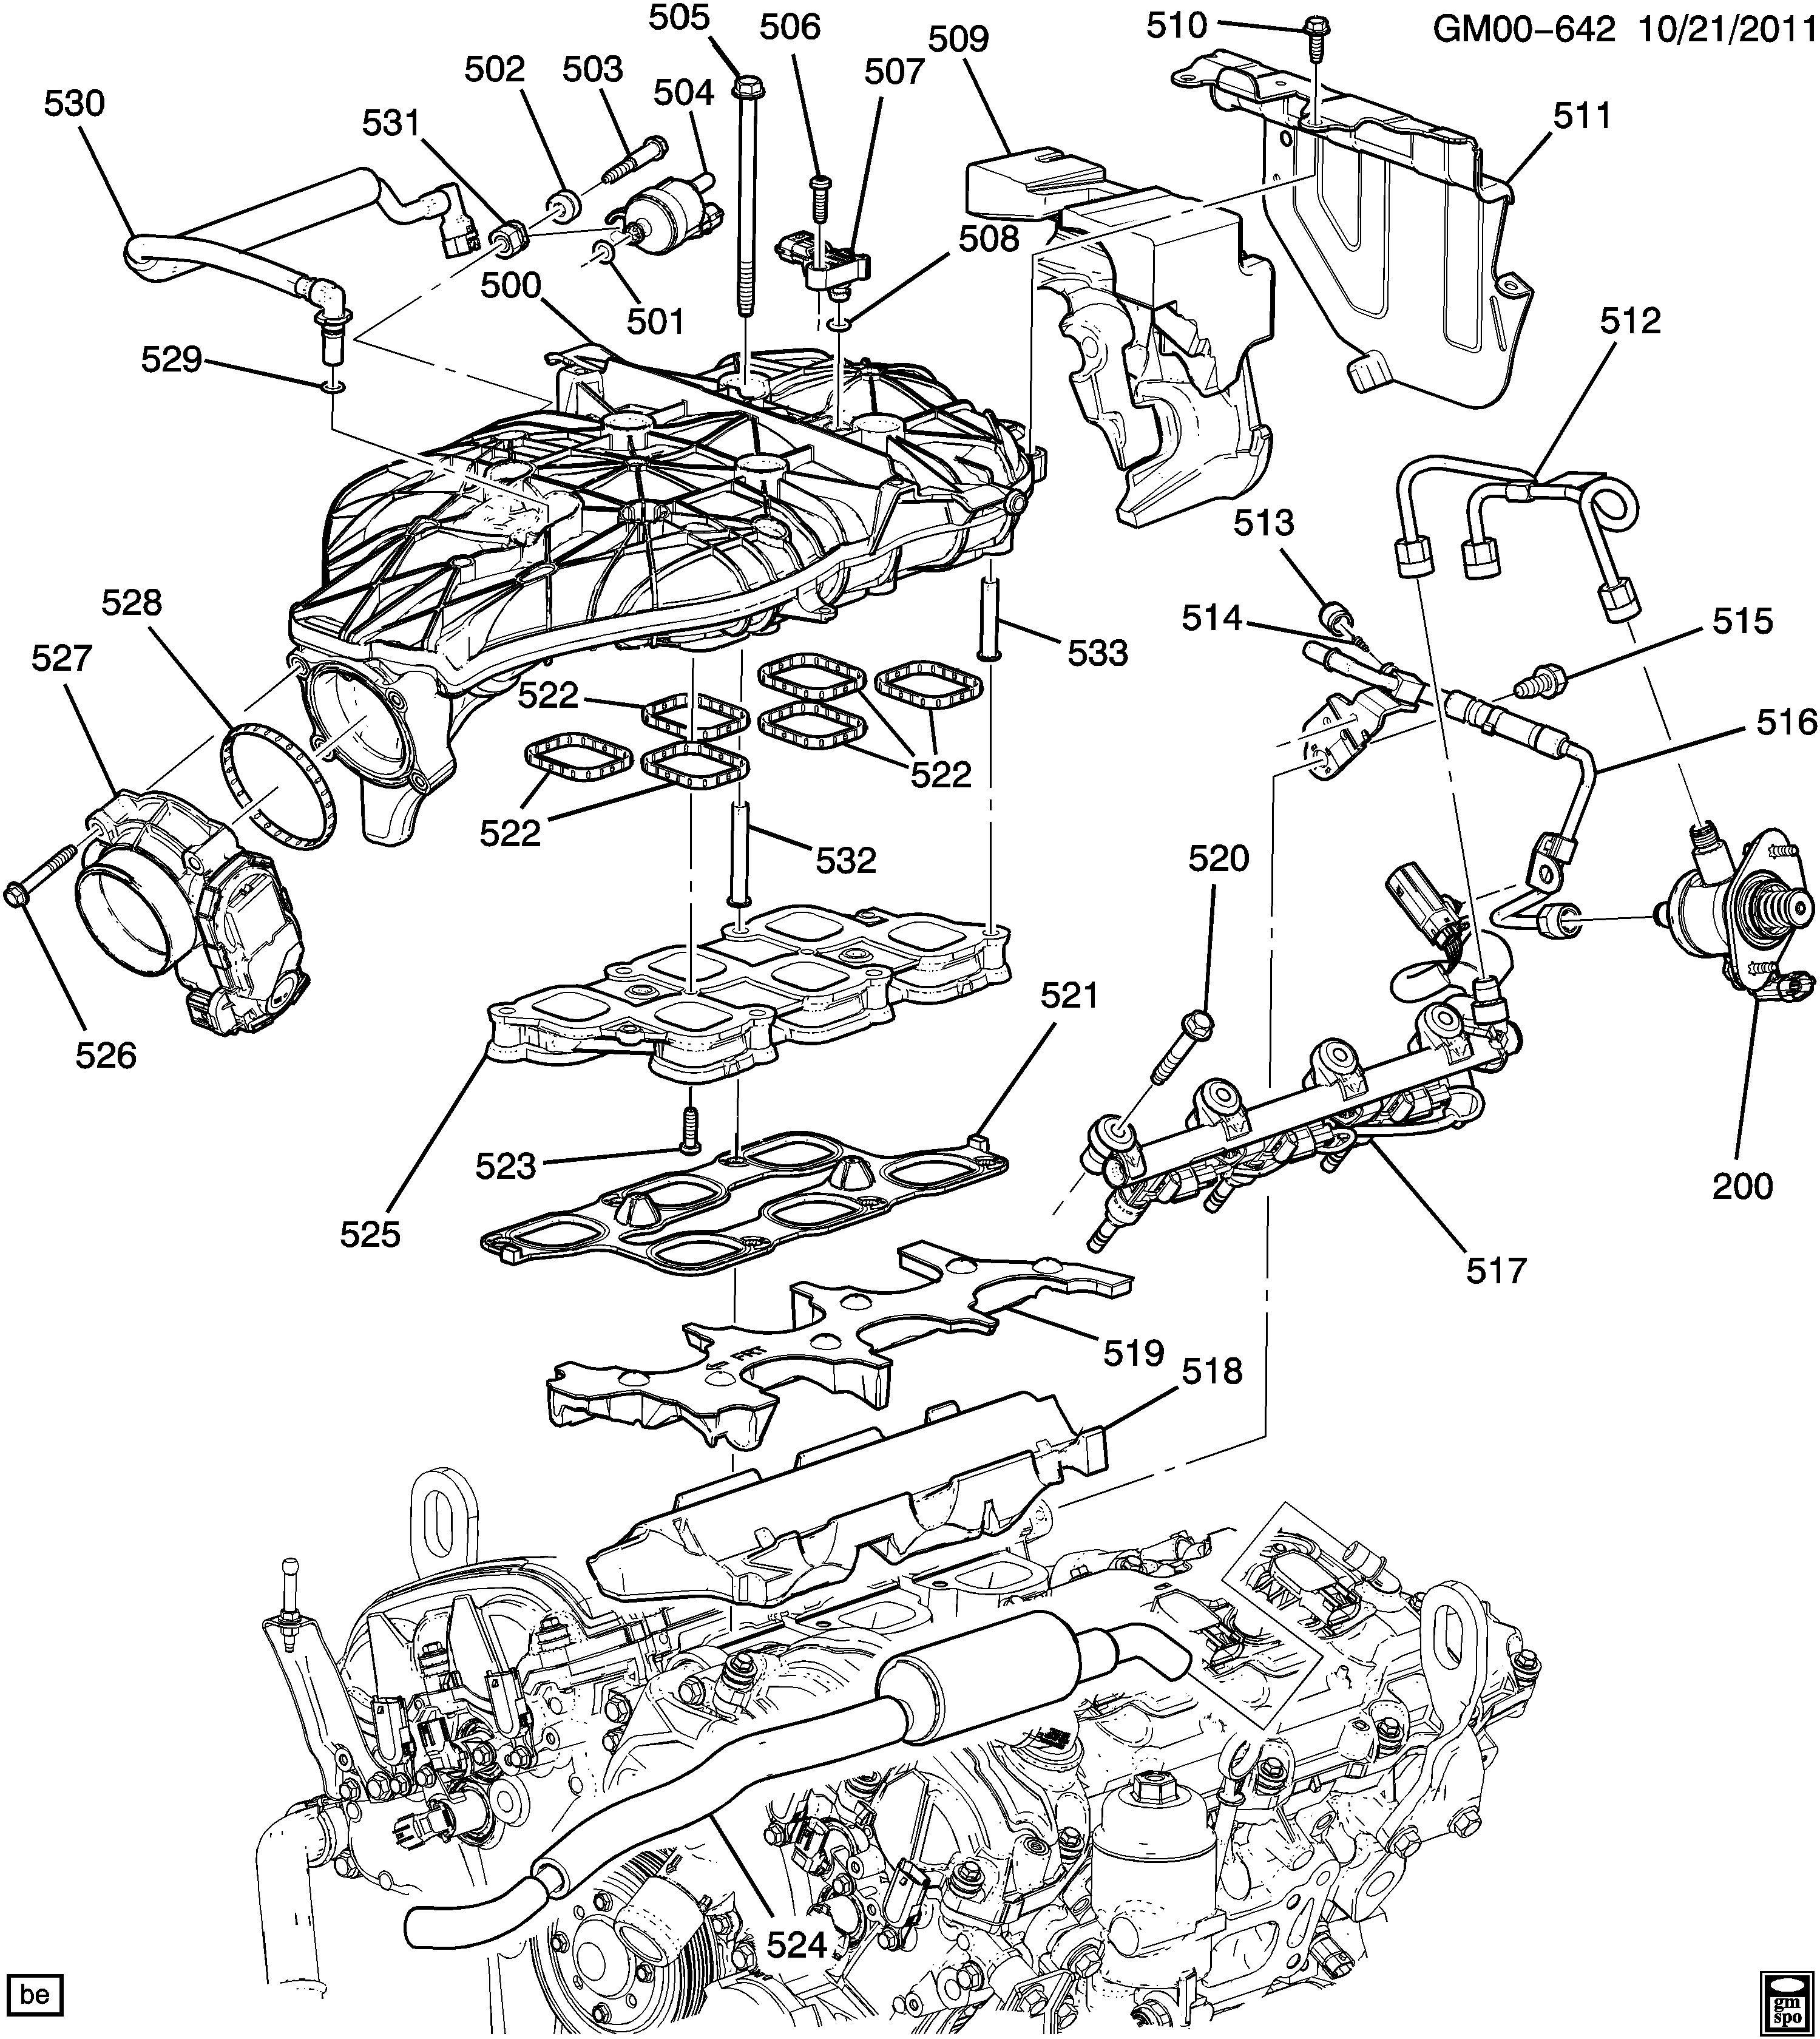 2010 Mazda 3 Engine Wiring Diagram] Mazda 3 0 V6 Engine Diagram Cylinder 6 Full Version Of 2010 Mazda 3 Engine Wiring